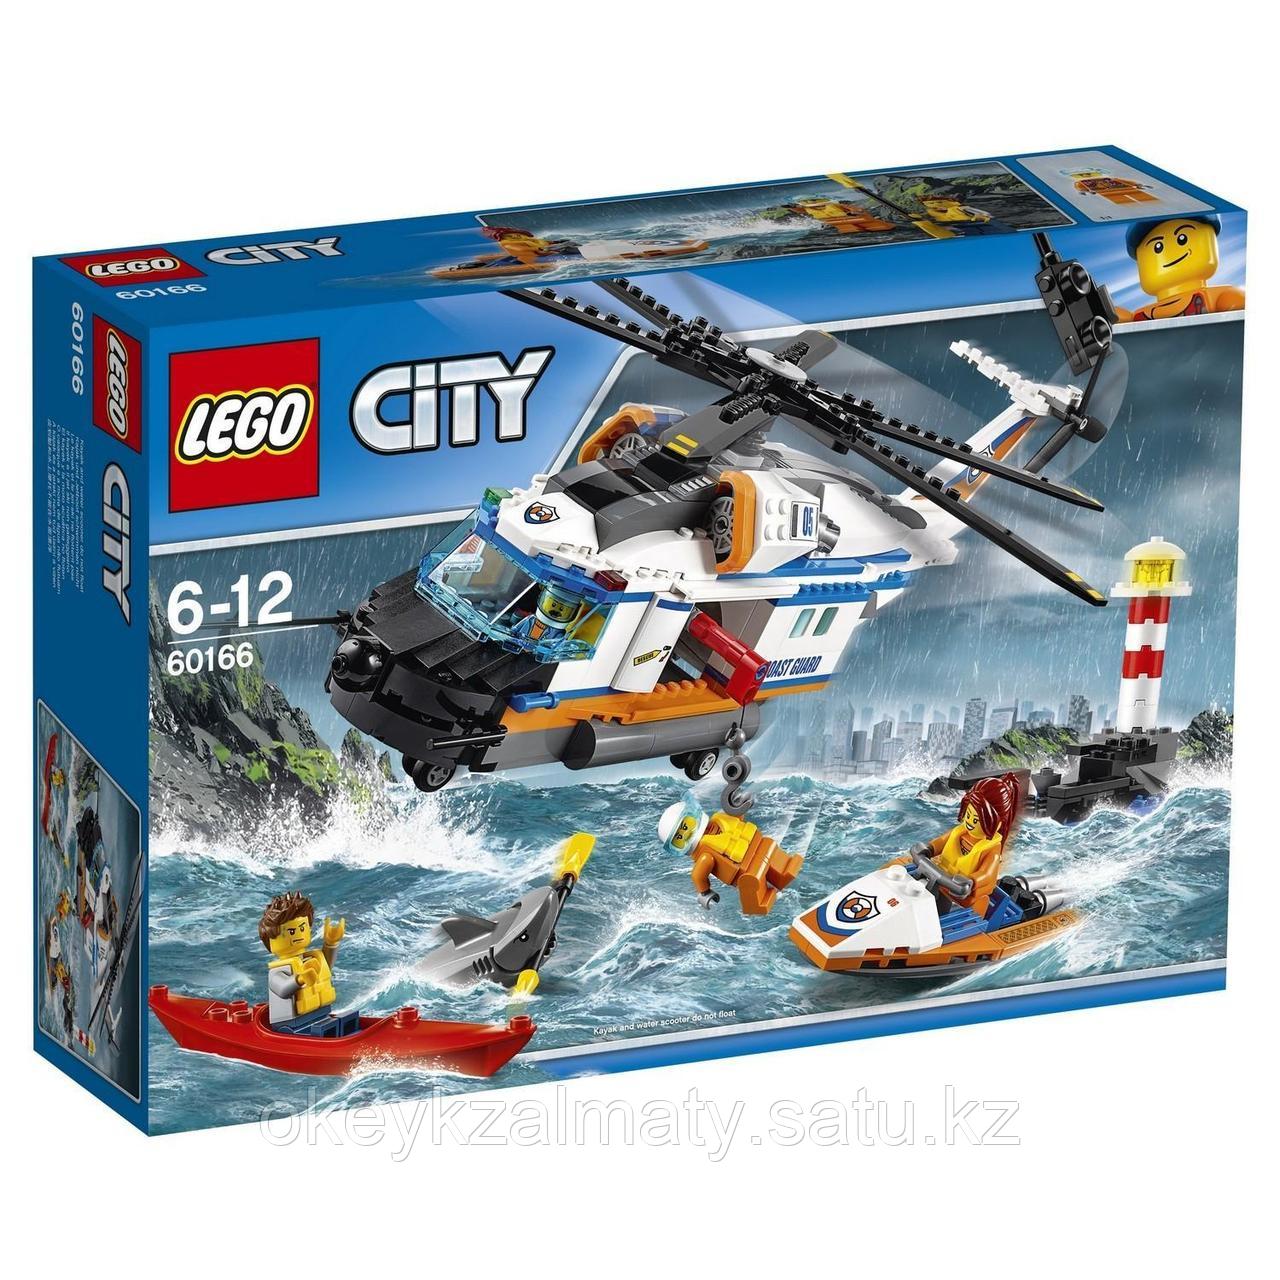 LEGO City: Сверхмощный спасательный вертолёт 60166